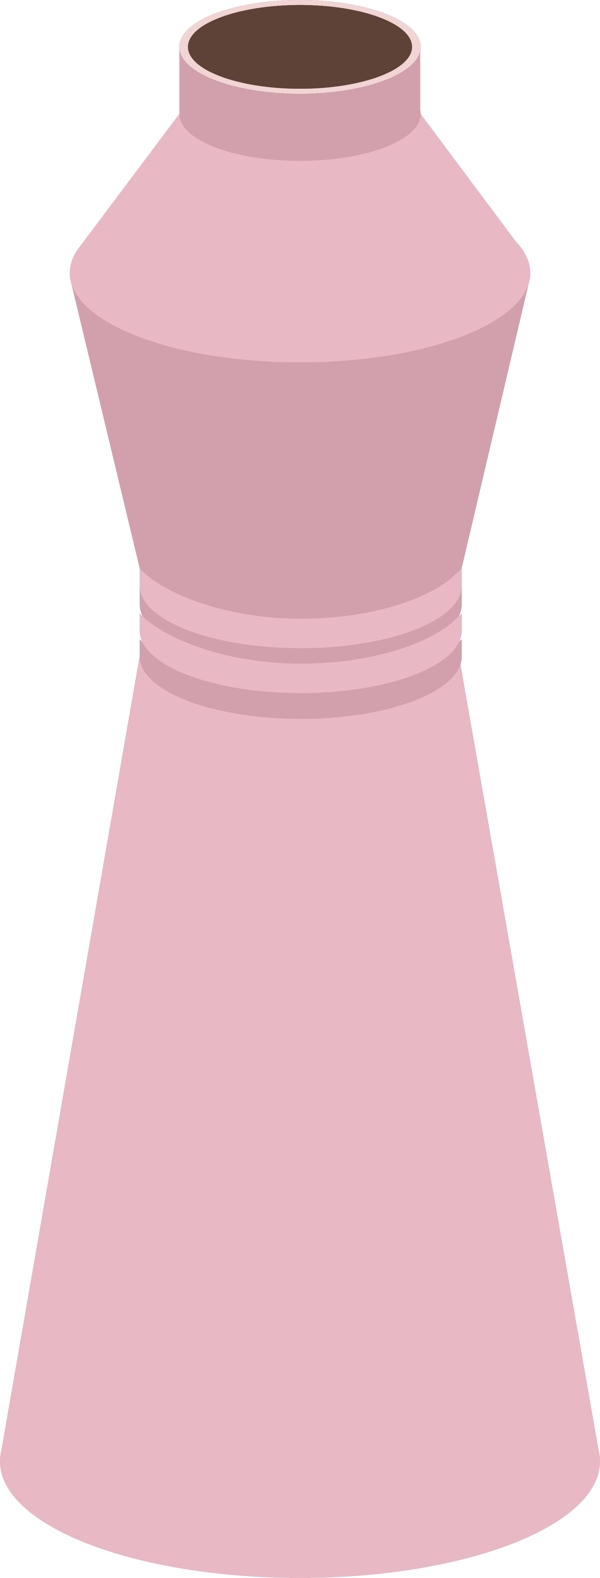 2.5D粉色瓶子饮料瓶原创可商用设计元素